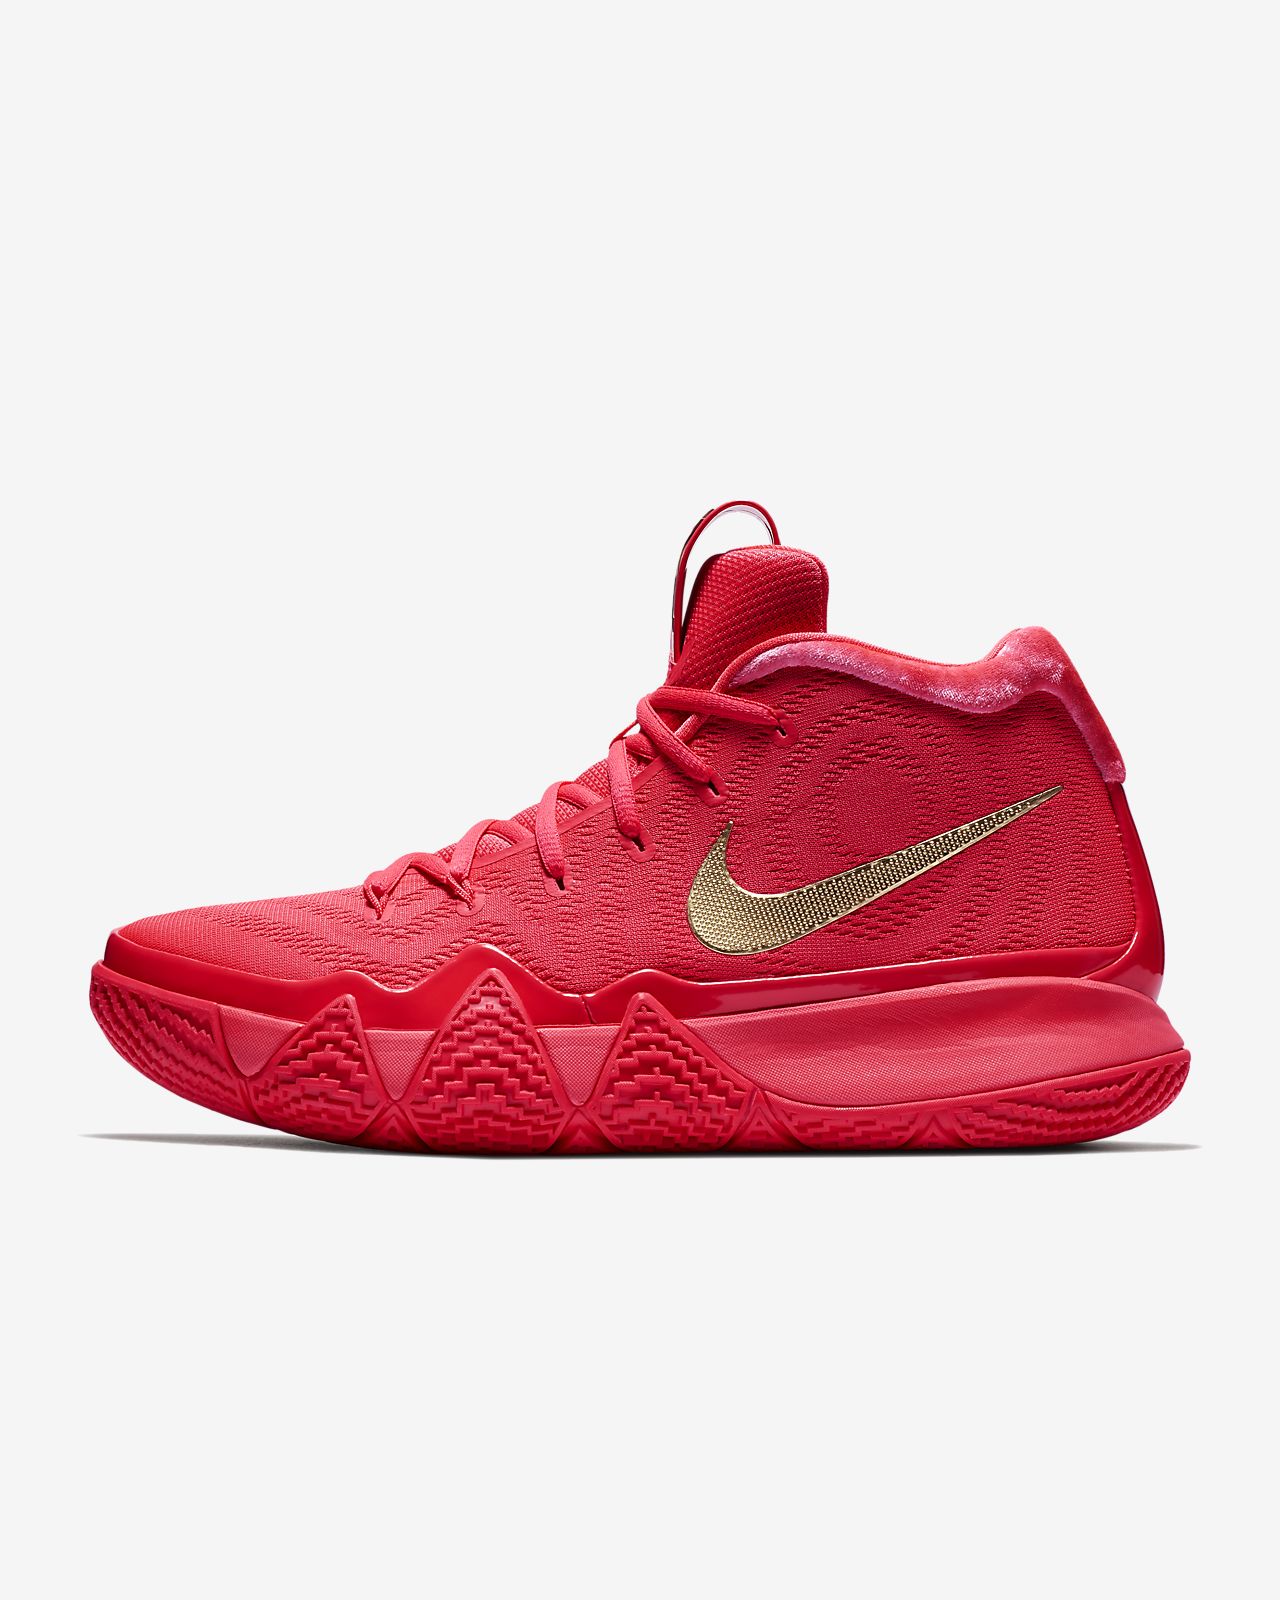 Kyrie 4 Basketball Shoe Nike Com